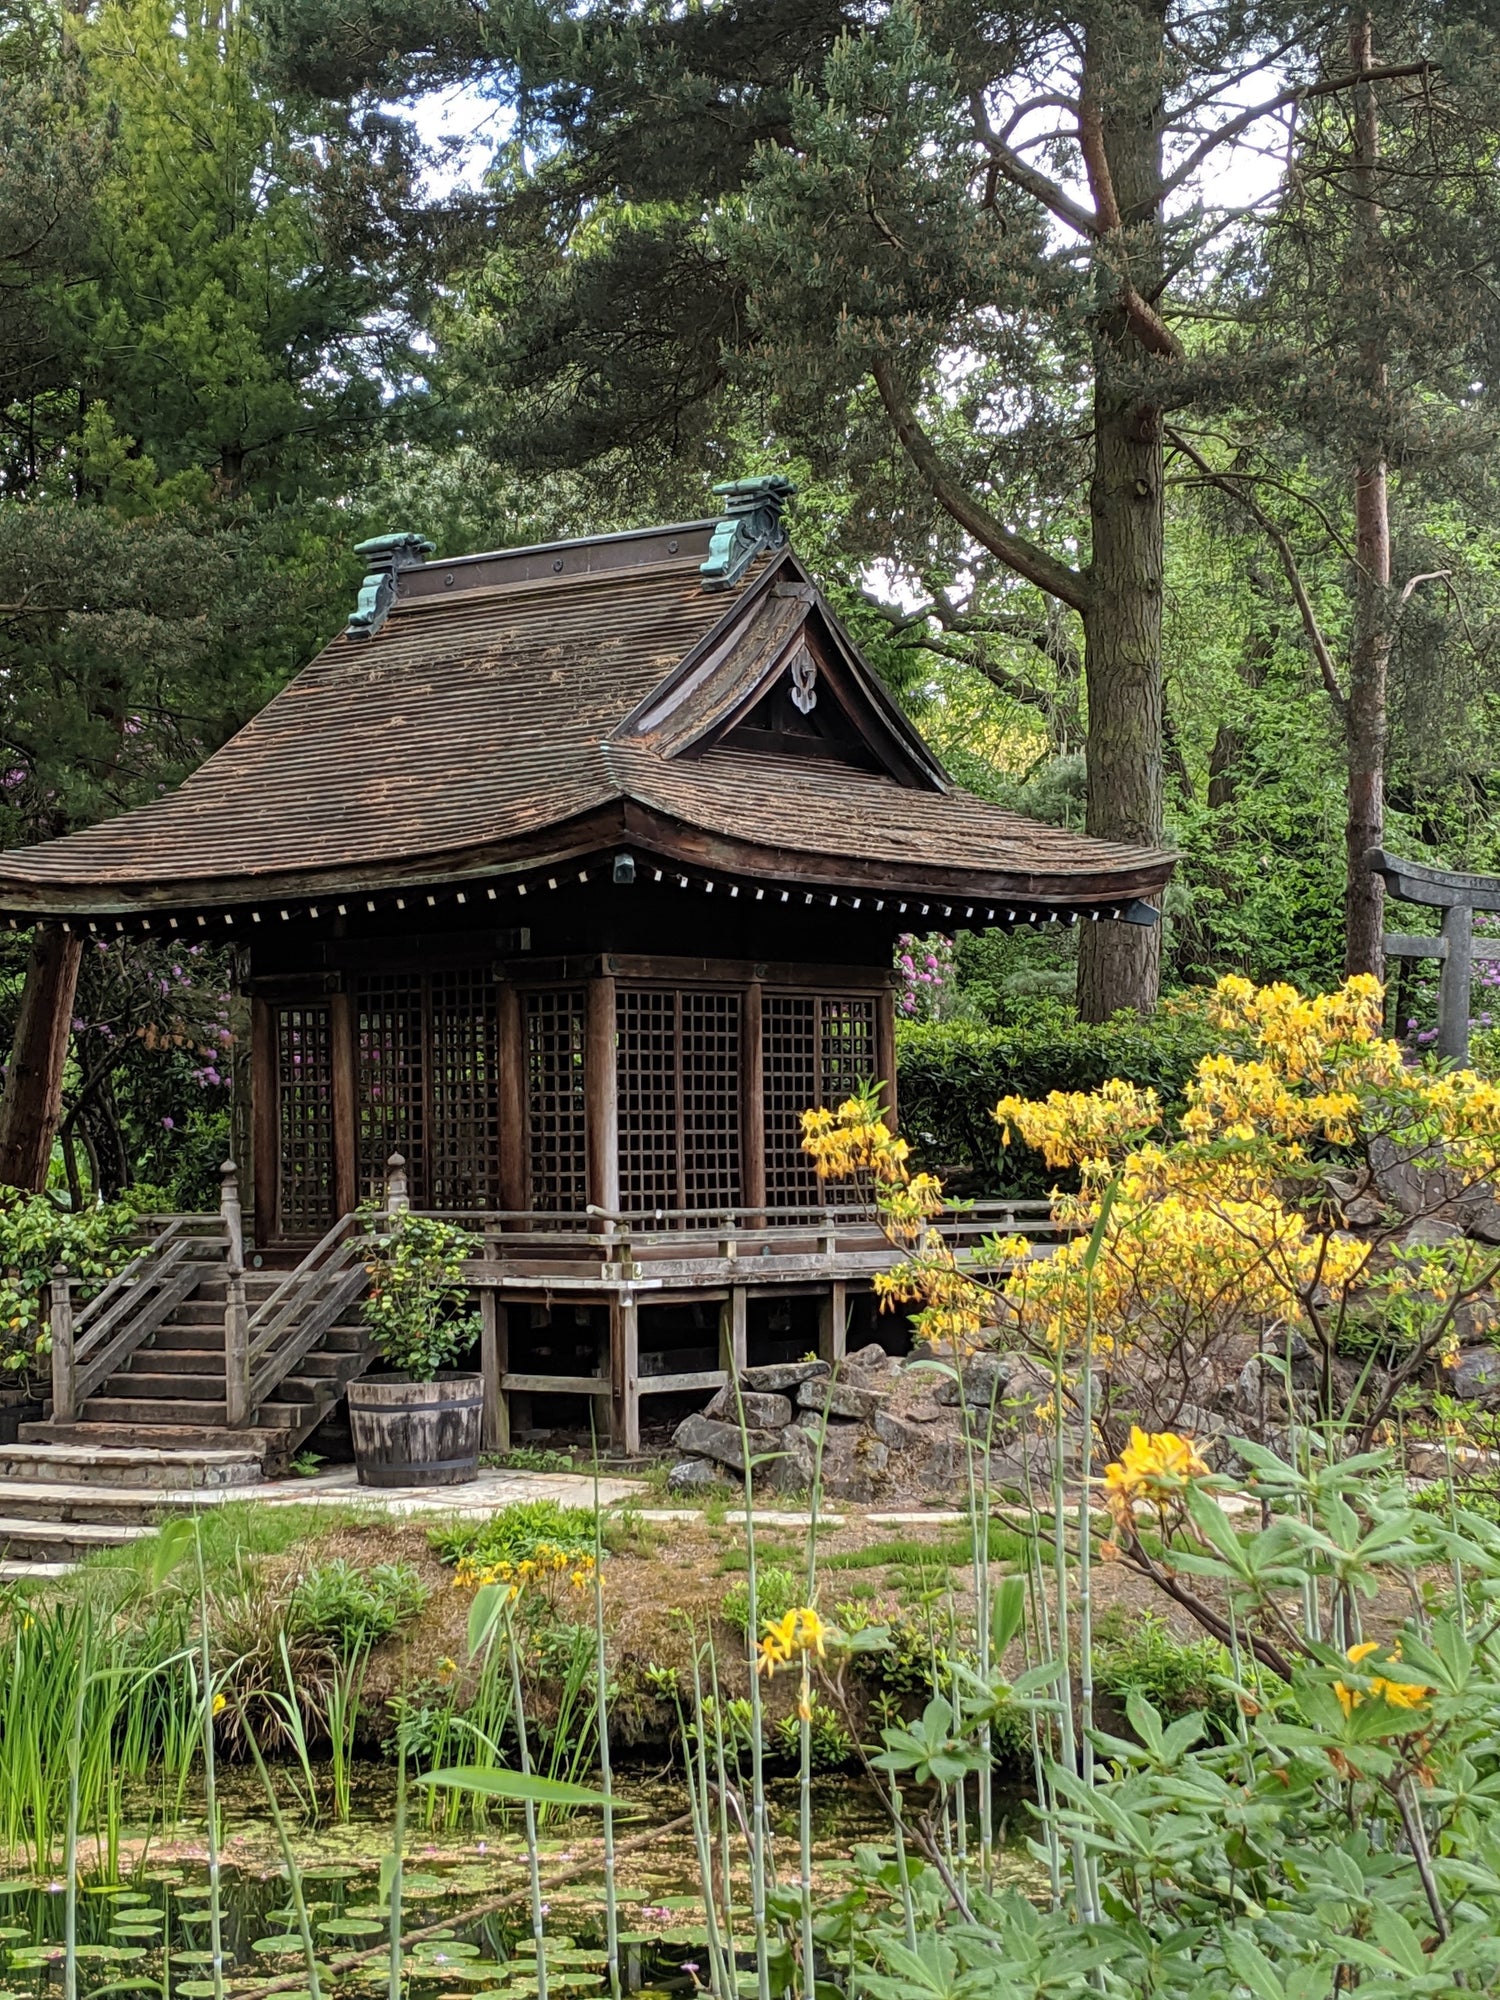 Comment se créer un beau jardin zen pour se détendre ?